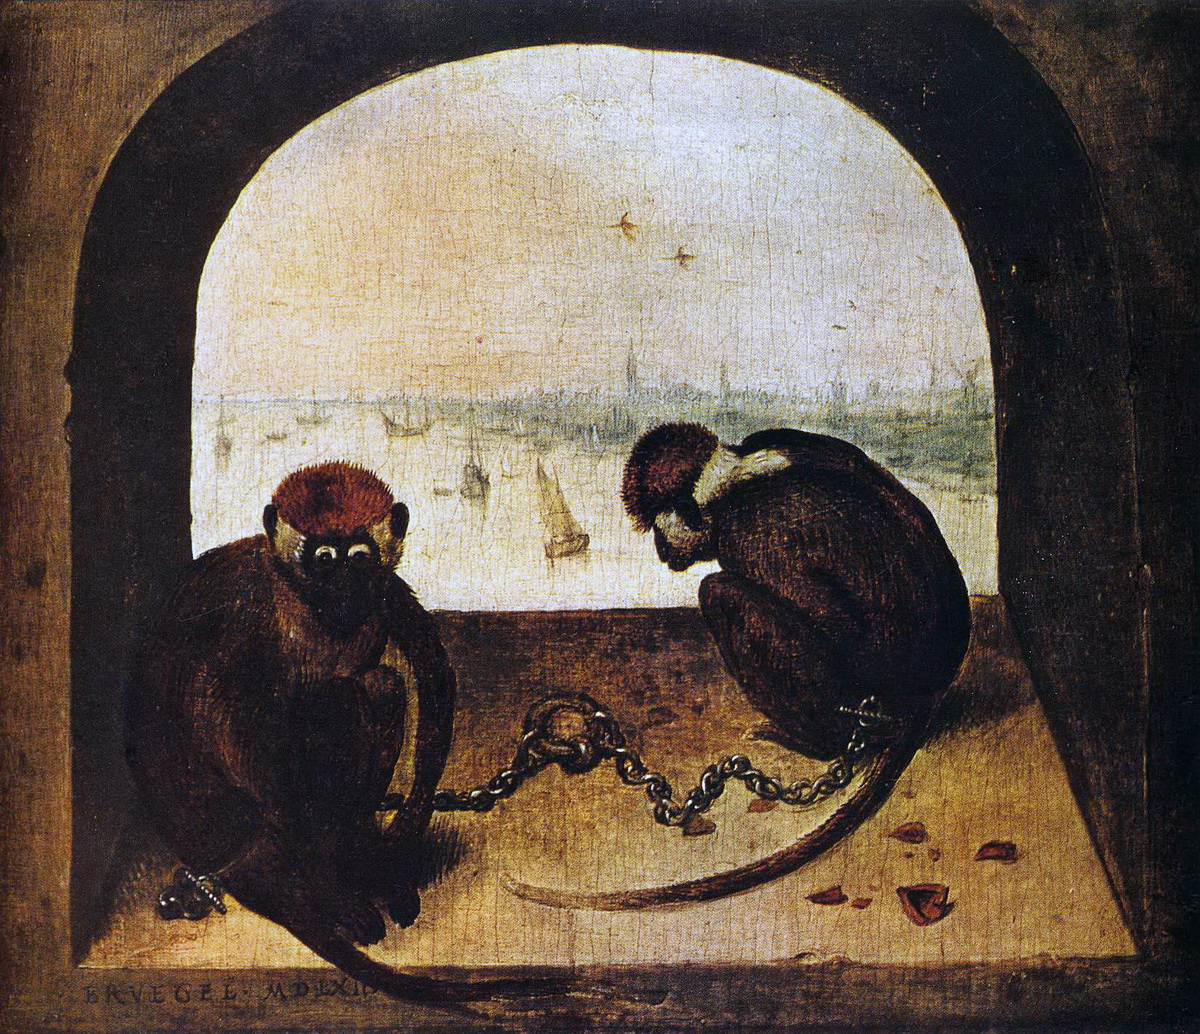 Питер Брейгель Старший. "Две обезьяны". 1562.